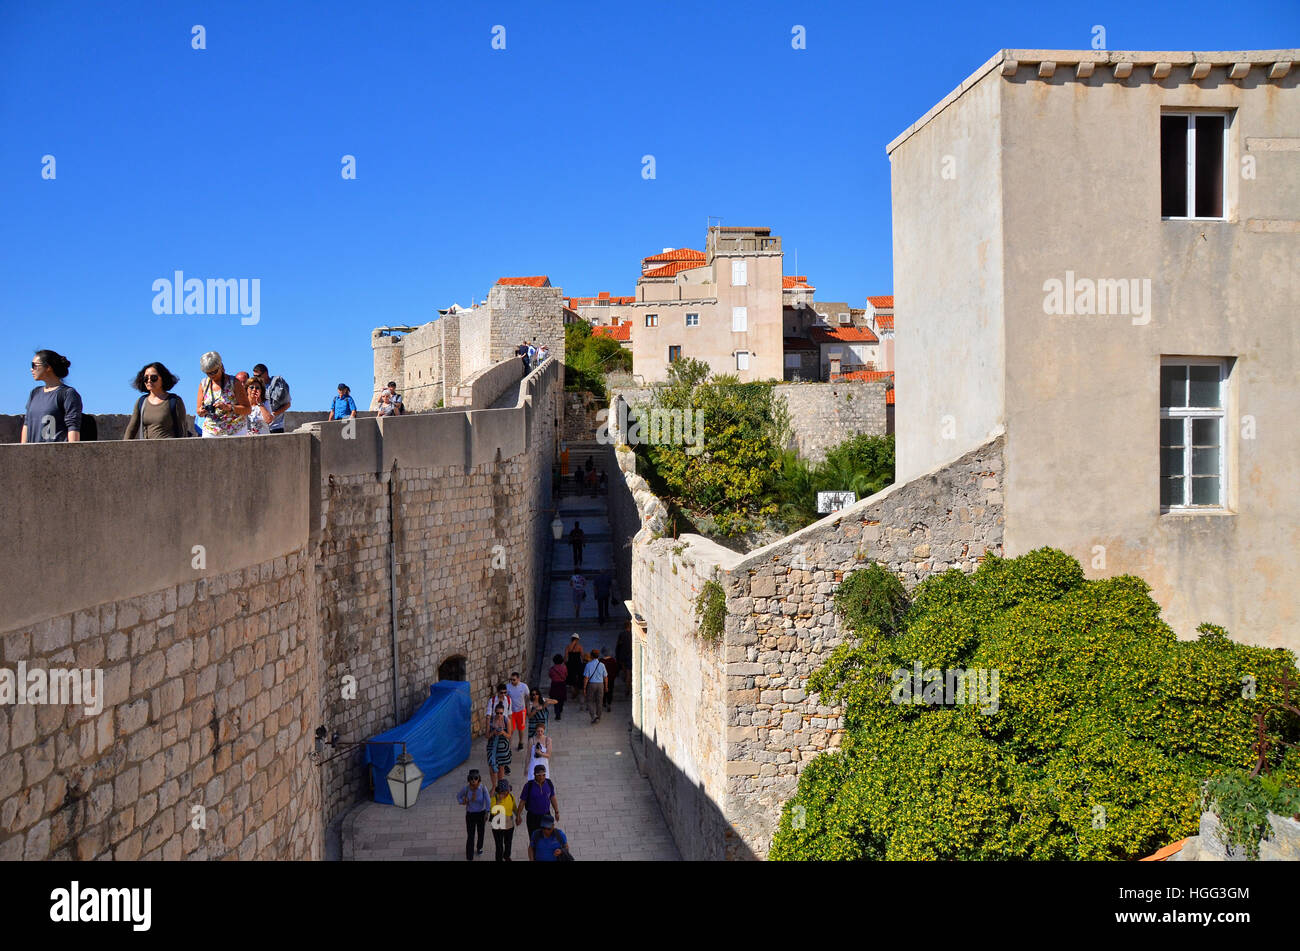 Les touristes à pied le long du mur de la ville fortifiée de Dubrovnik, Croatie. Banque D'Images